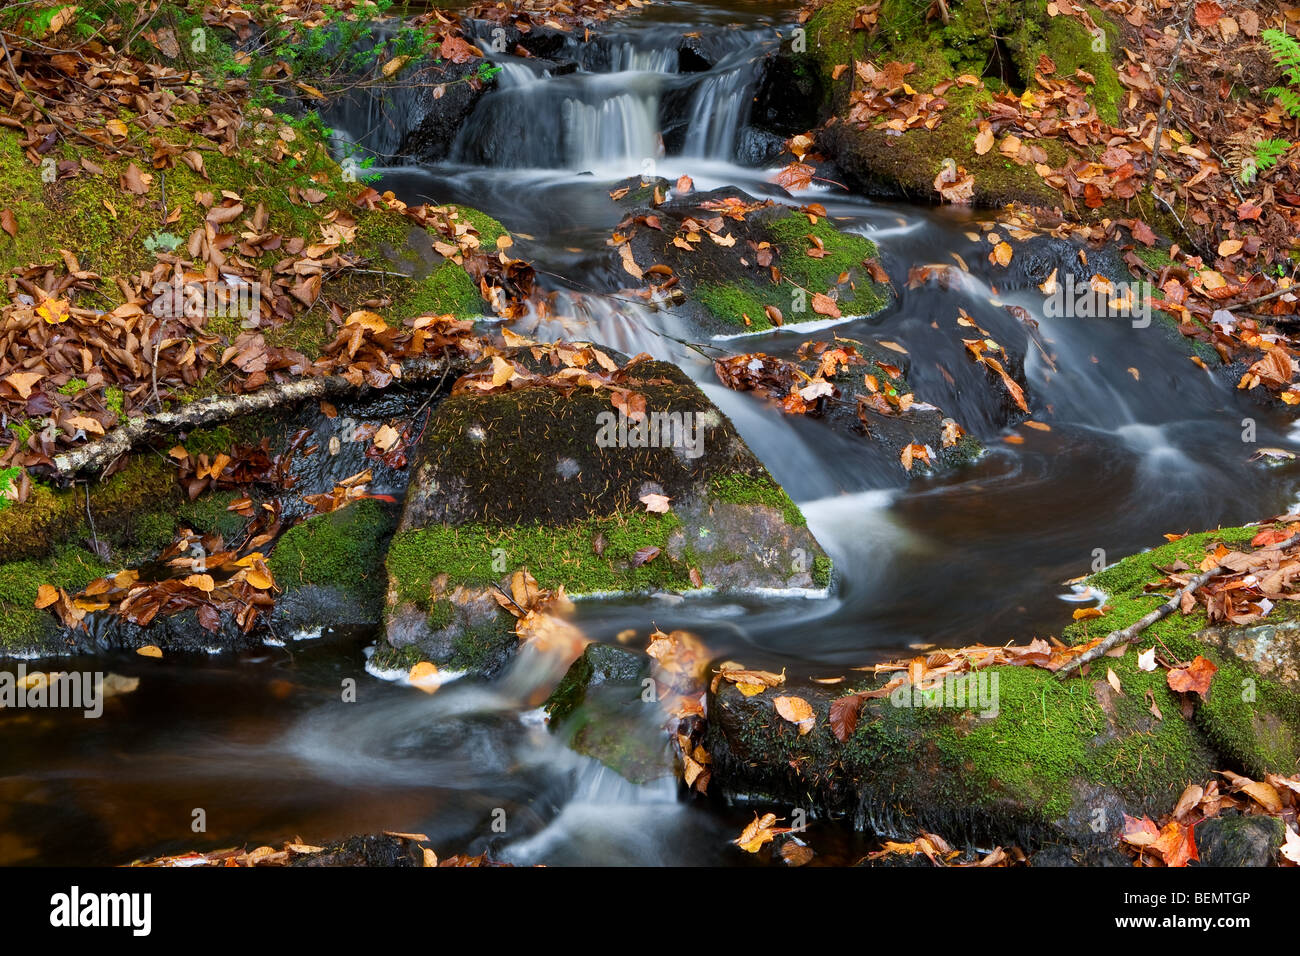 Un piccolo fiume che scorre intorno a lasciare caduti in una bucolica scena di autunno a nord del Québec Foto Stock